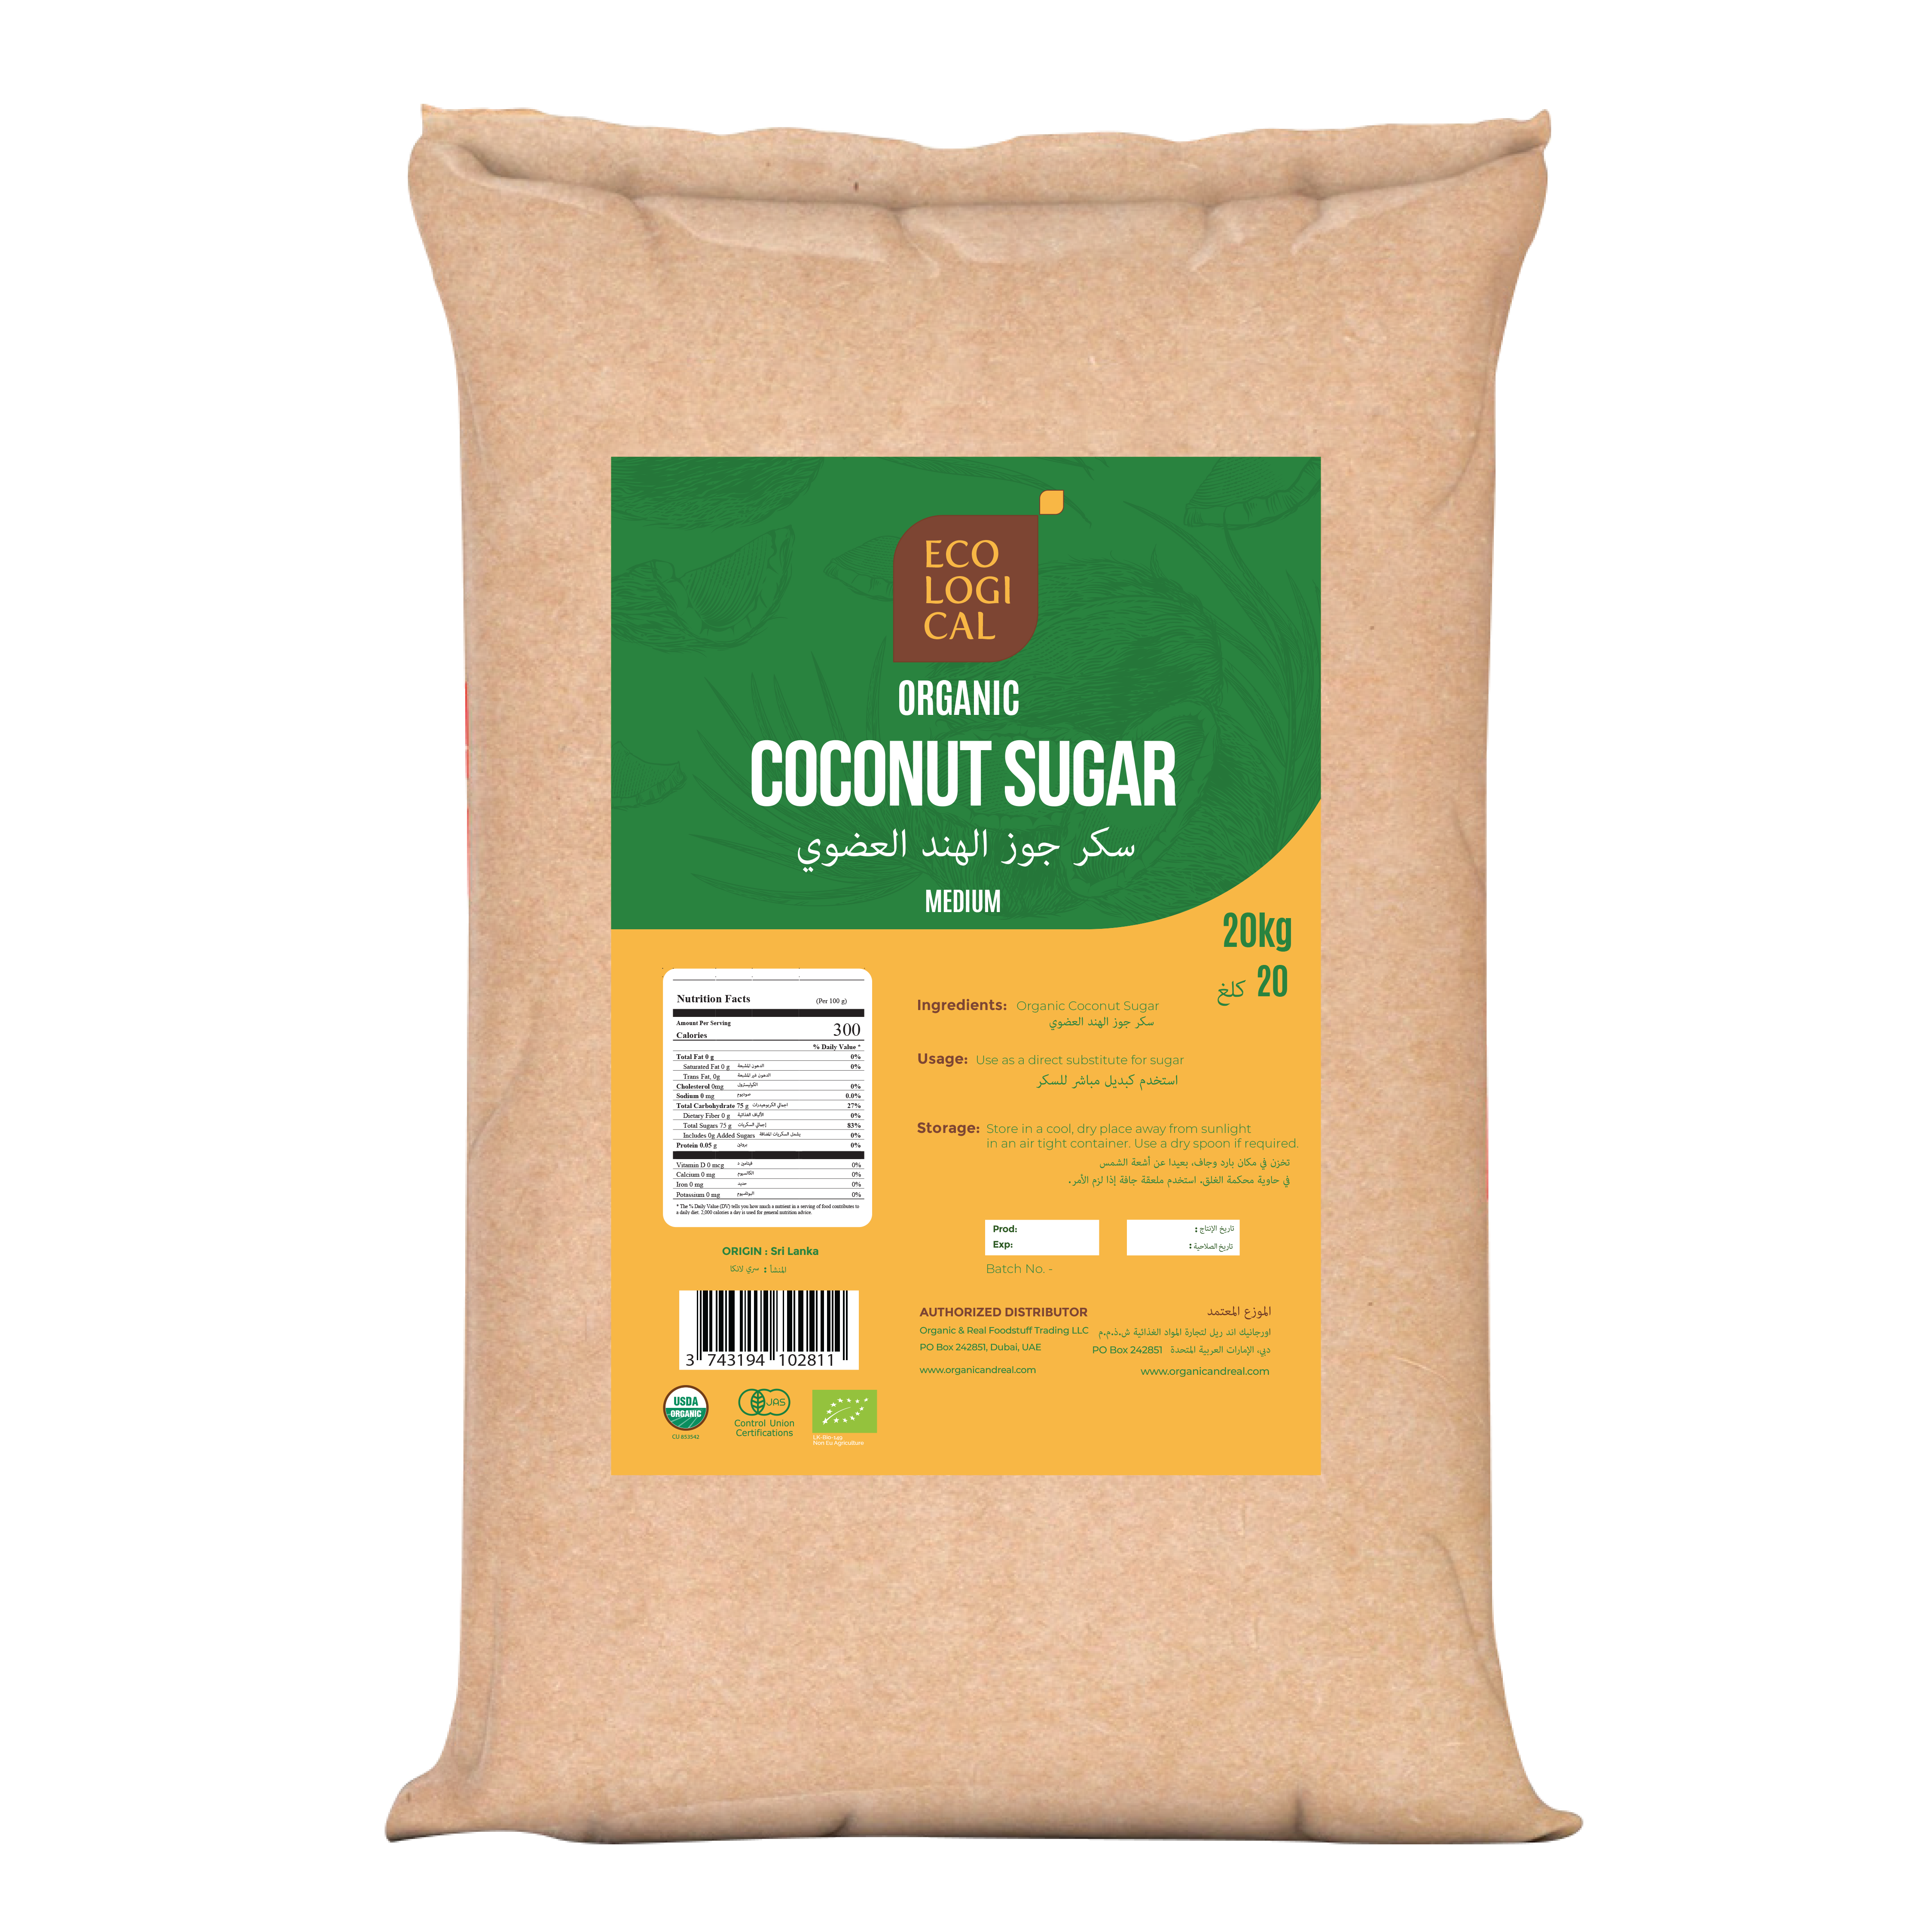 ECOLOGICAL Organic Coconut Sugar, 20Kg Medium